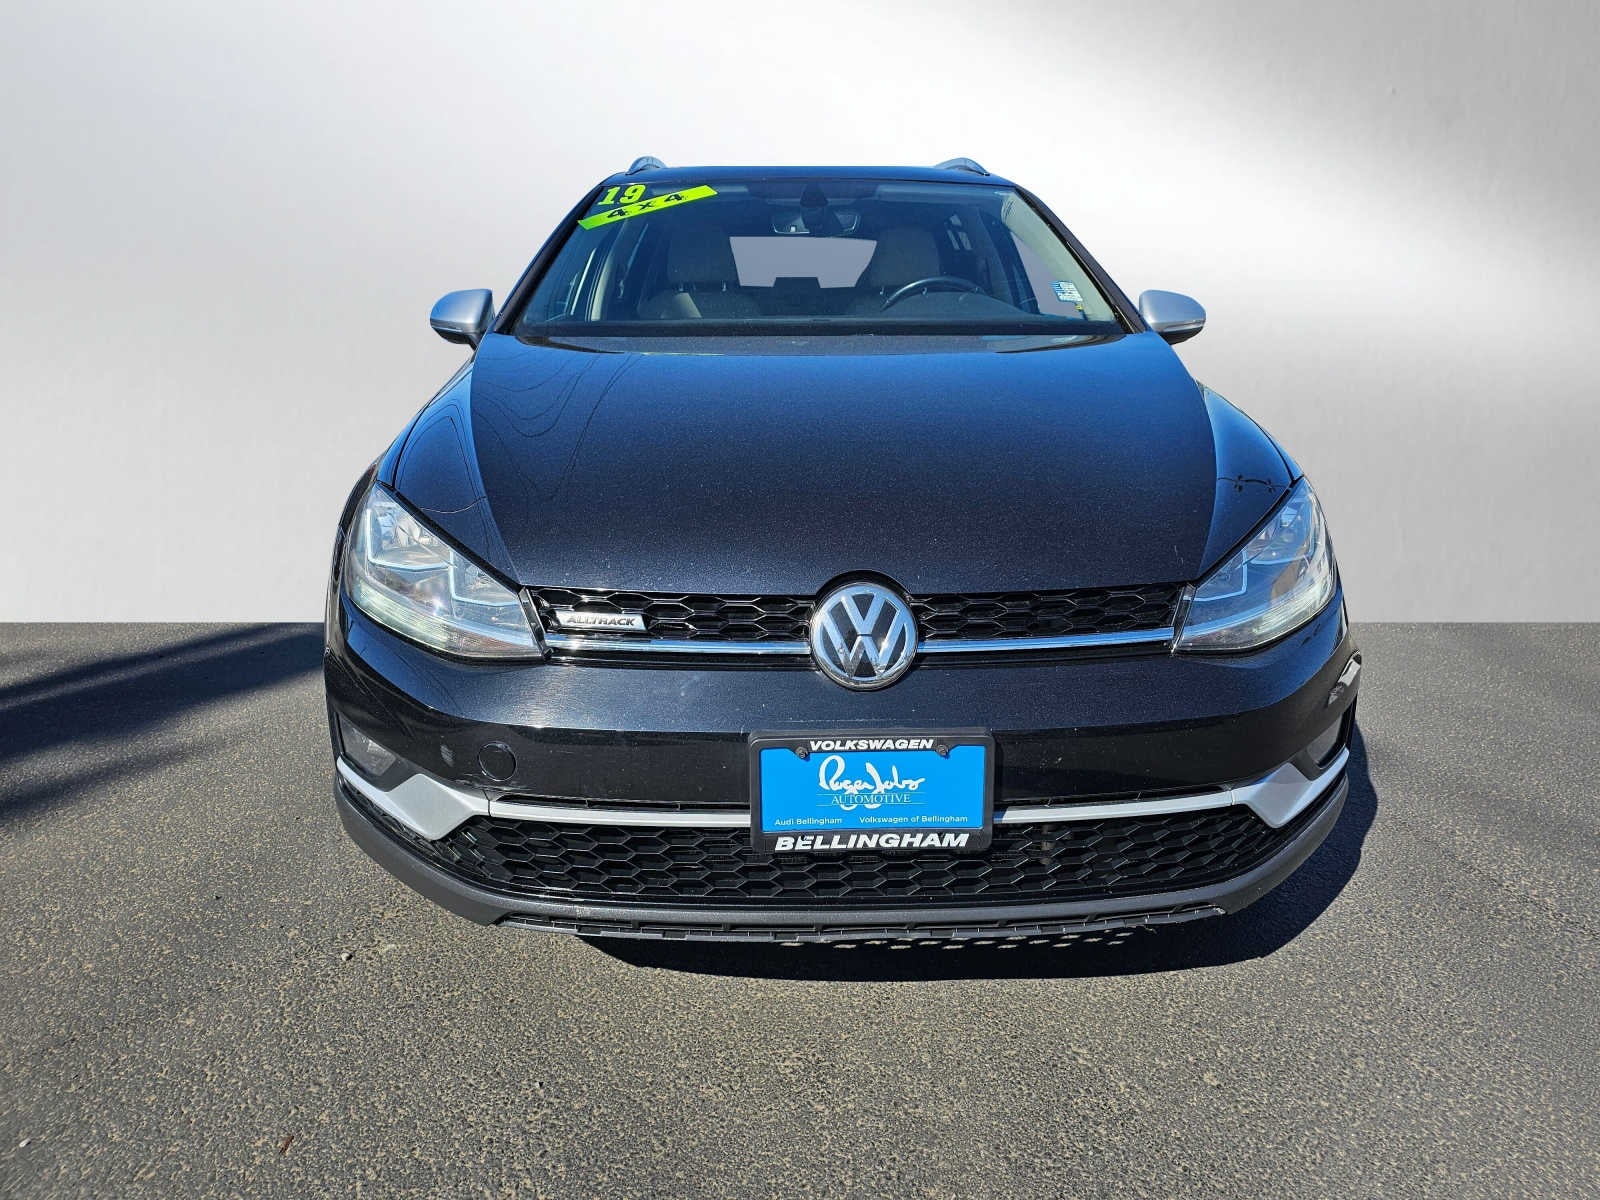 2019 Volkswagen Golf Alltrack 1.8T SE DSG